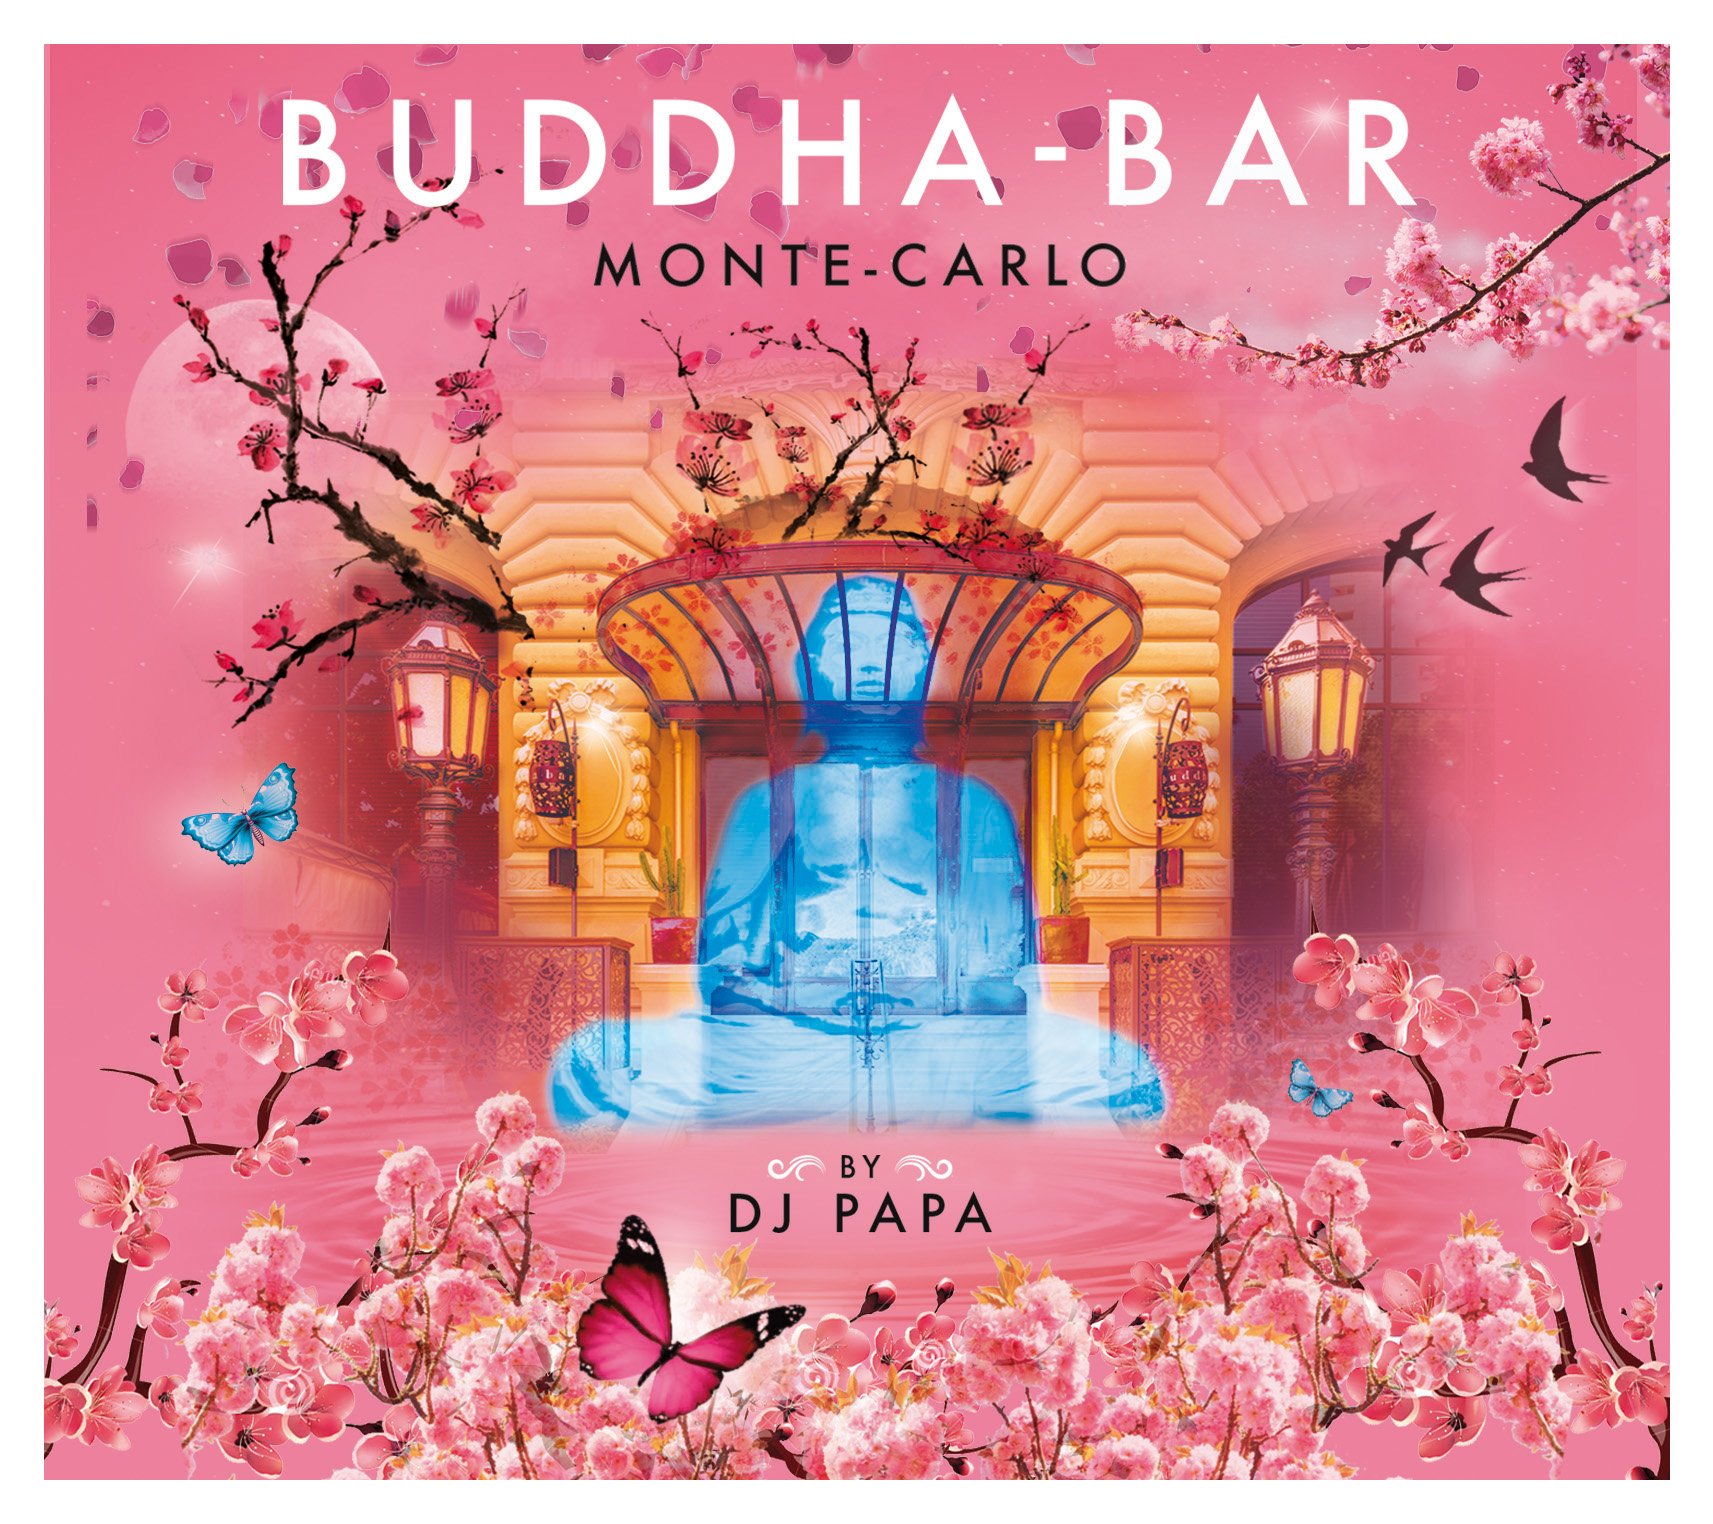 Buddha-Bar Music (@BuddhaBarMusic) / Twitter